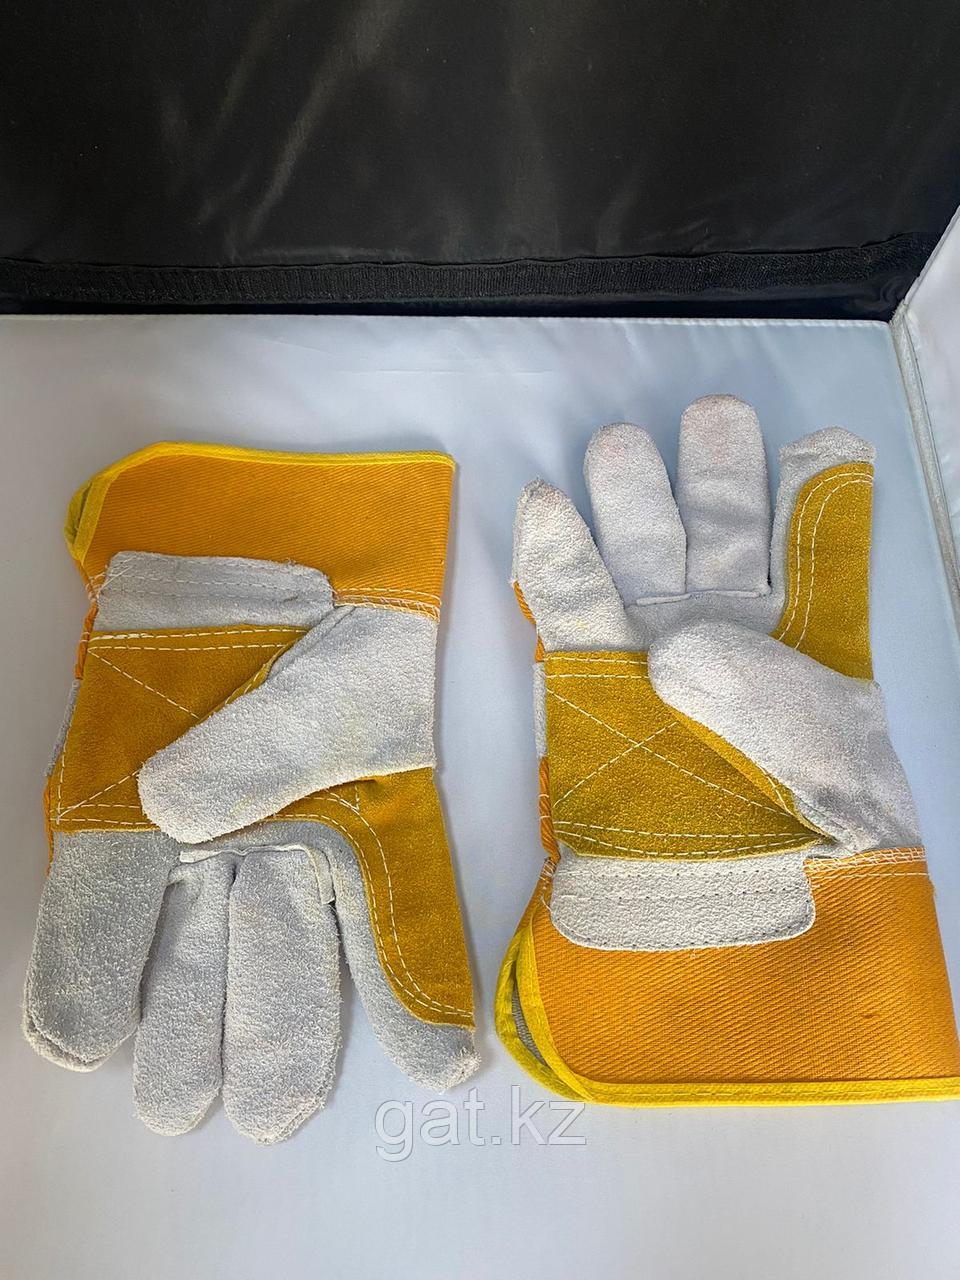 Перчатки рабочие кожа комбинированный,Строительные, рабочие перчатки, рукавицы оптом в Алматы